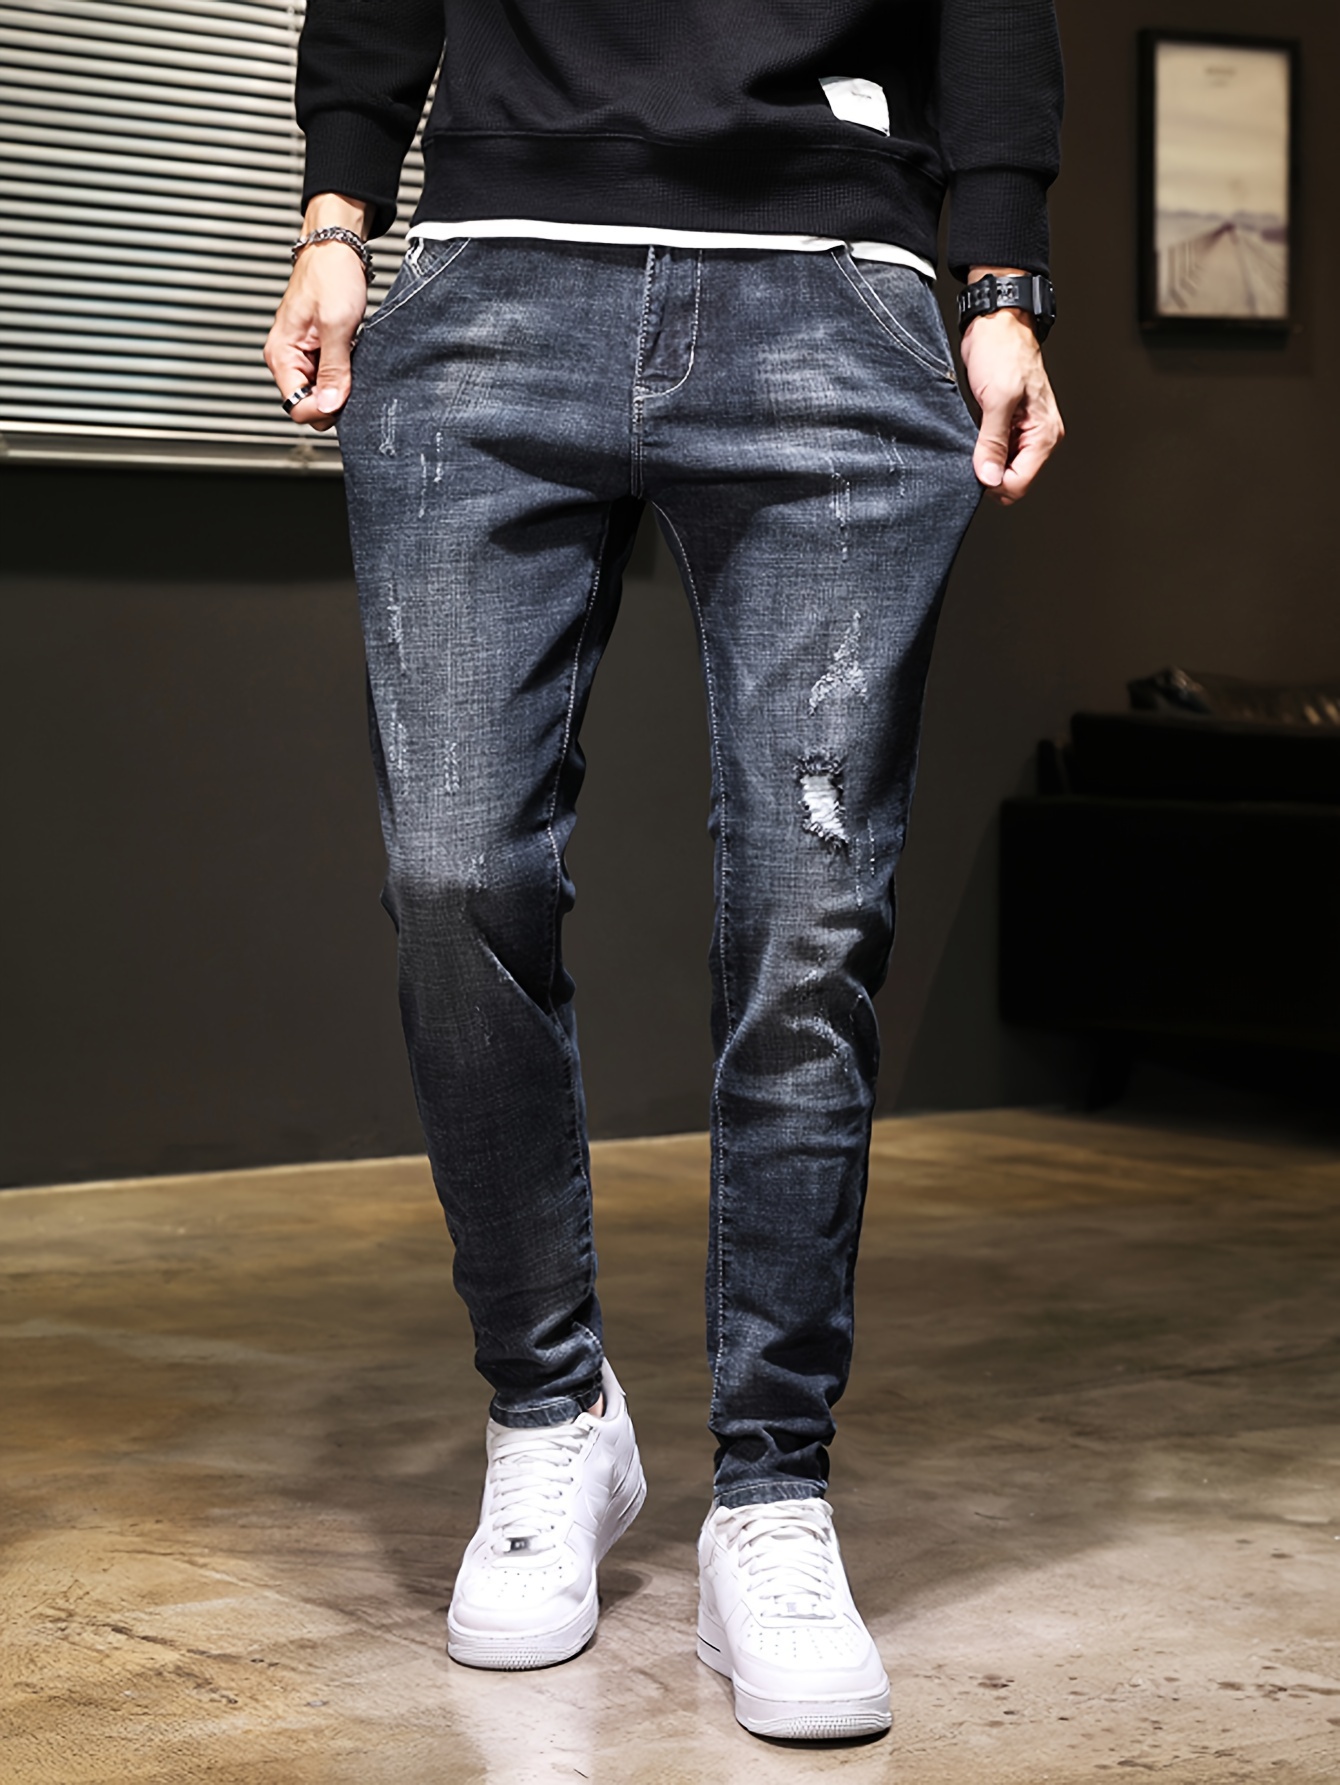 redbat mens moda fita jeans tamanho 46 trending calças mans jeans